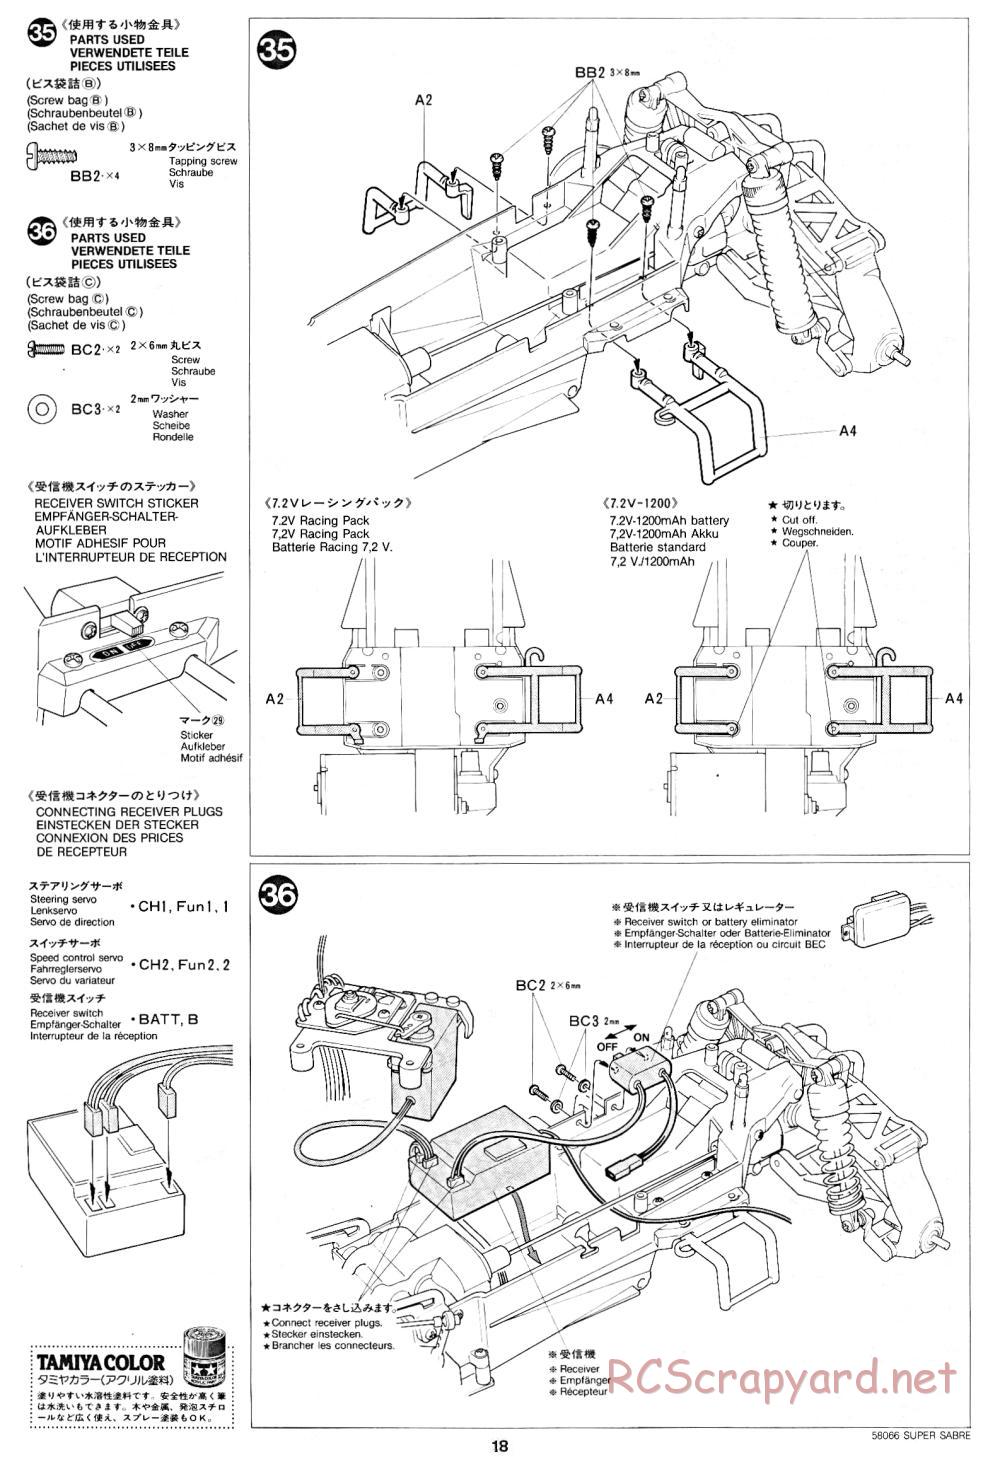 Tamiya - Super Sabre - 58066 - Manual - Page 18